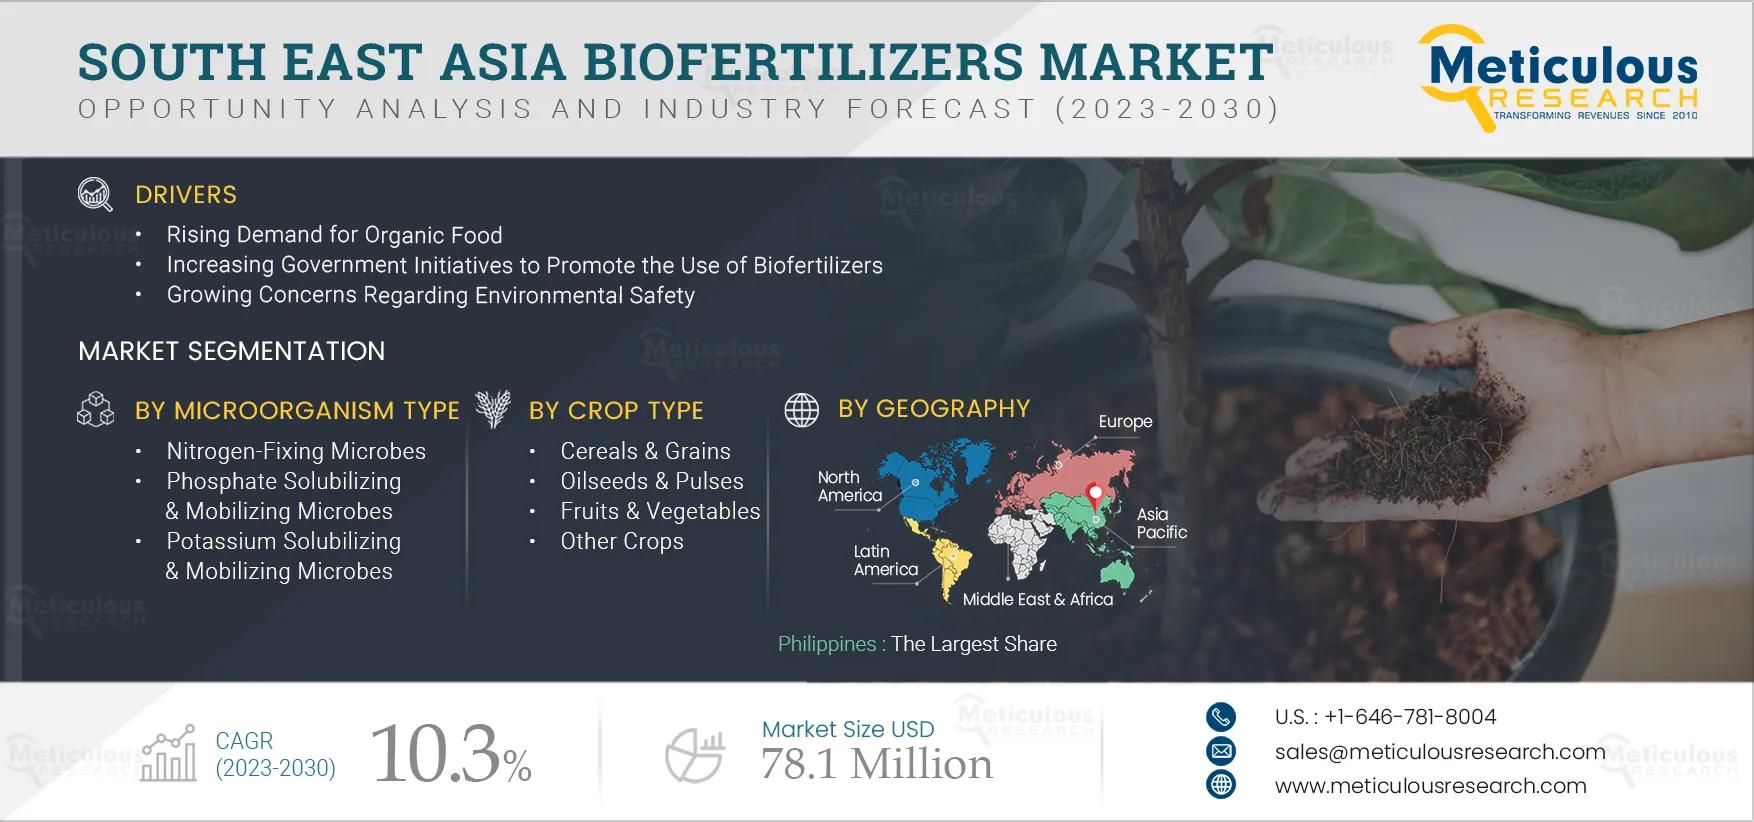 South East Asia Biofertilizers Market